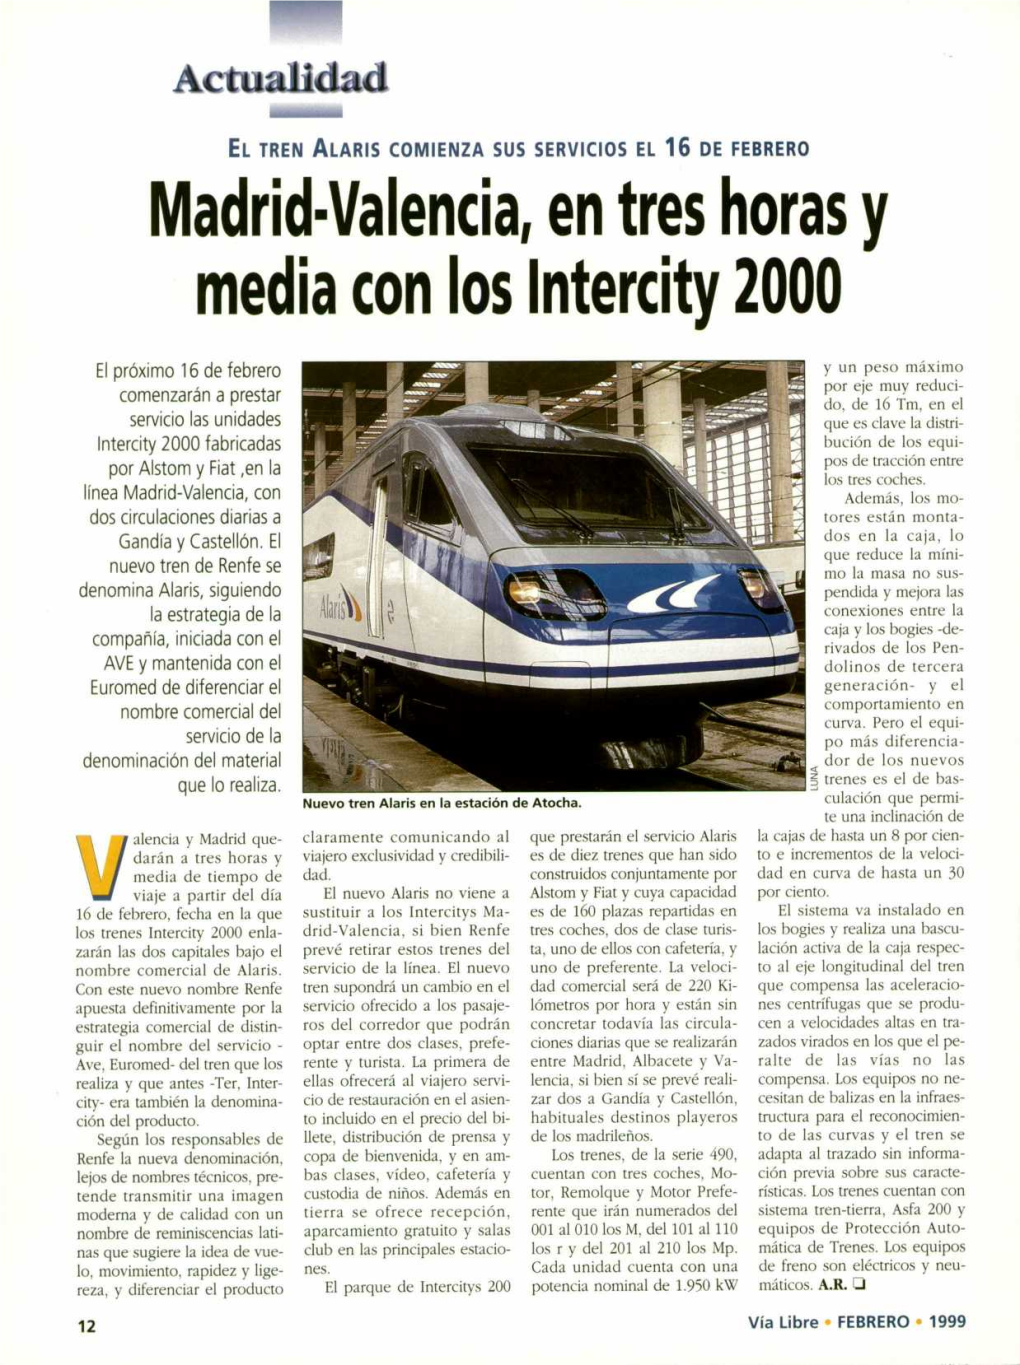 Madrid•Valencia, En Tres Horas Y Media Con Los Intercity 2000